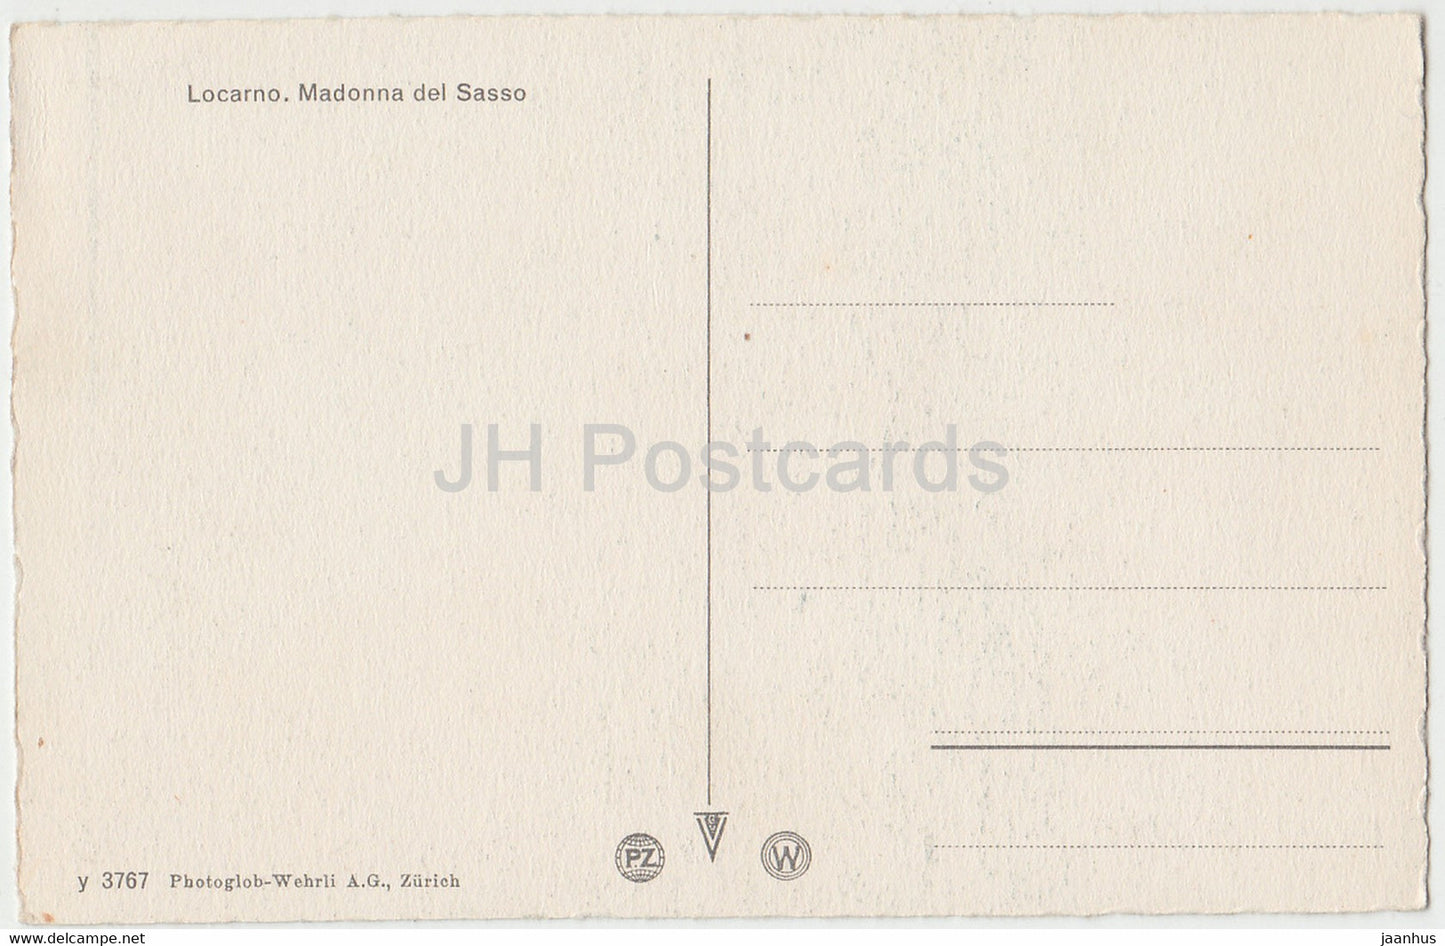 Locarno - Madonna del Sasso - 3767 - alte Postkarte - Schweiz - unbenutzt